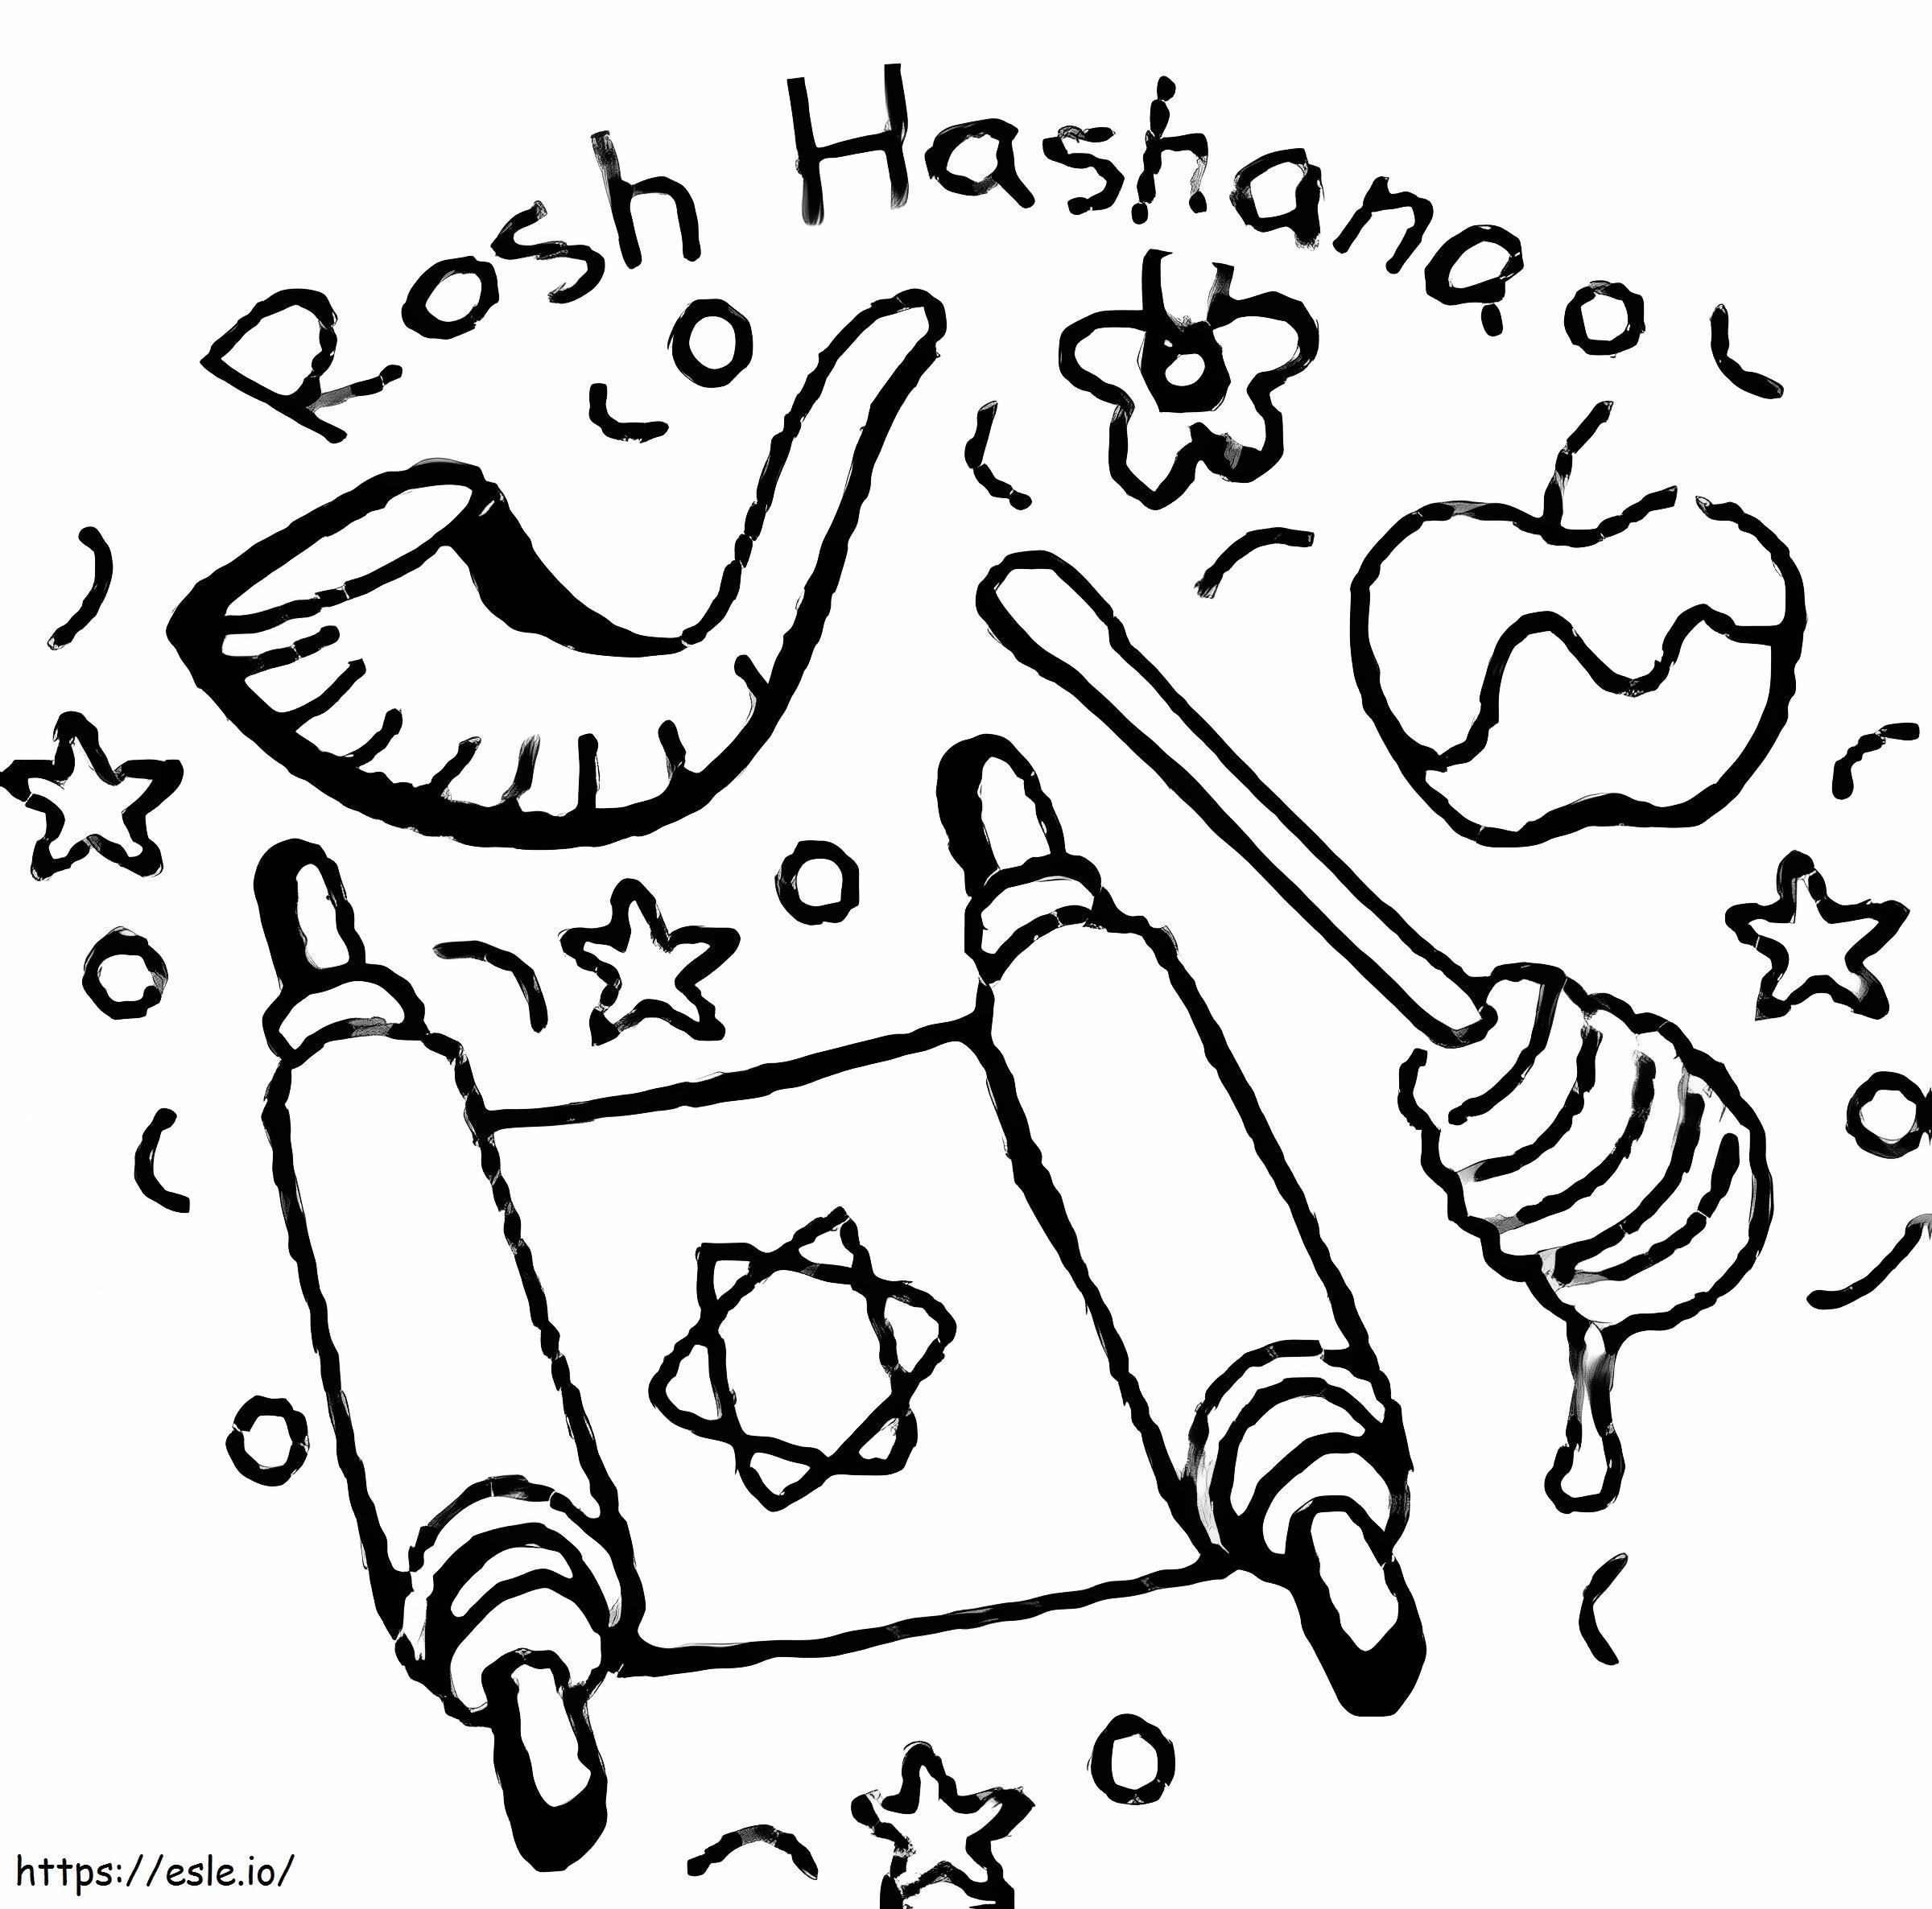 Rosh Hashanah Jewish Holiday coloring page